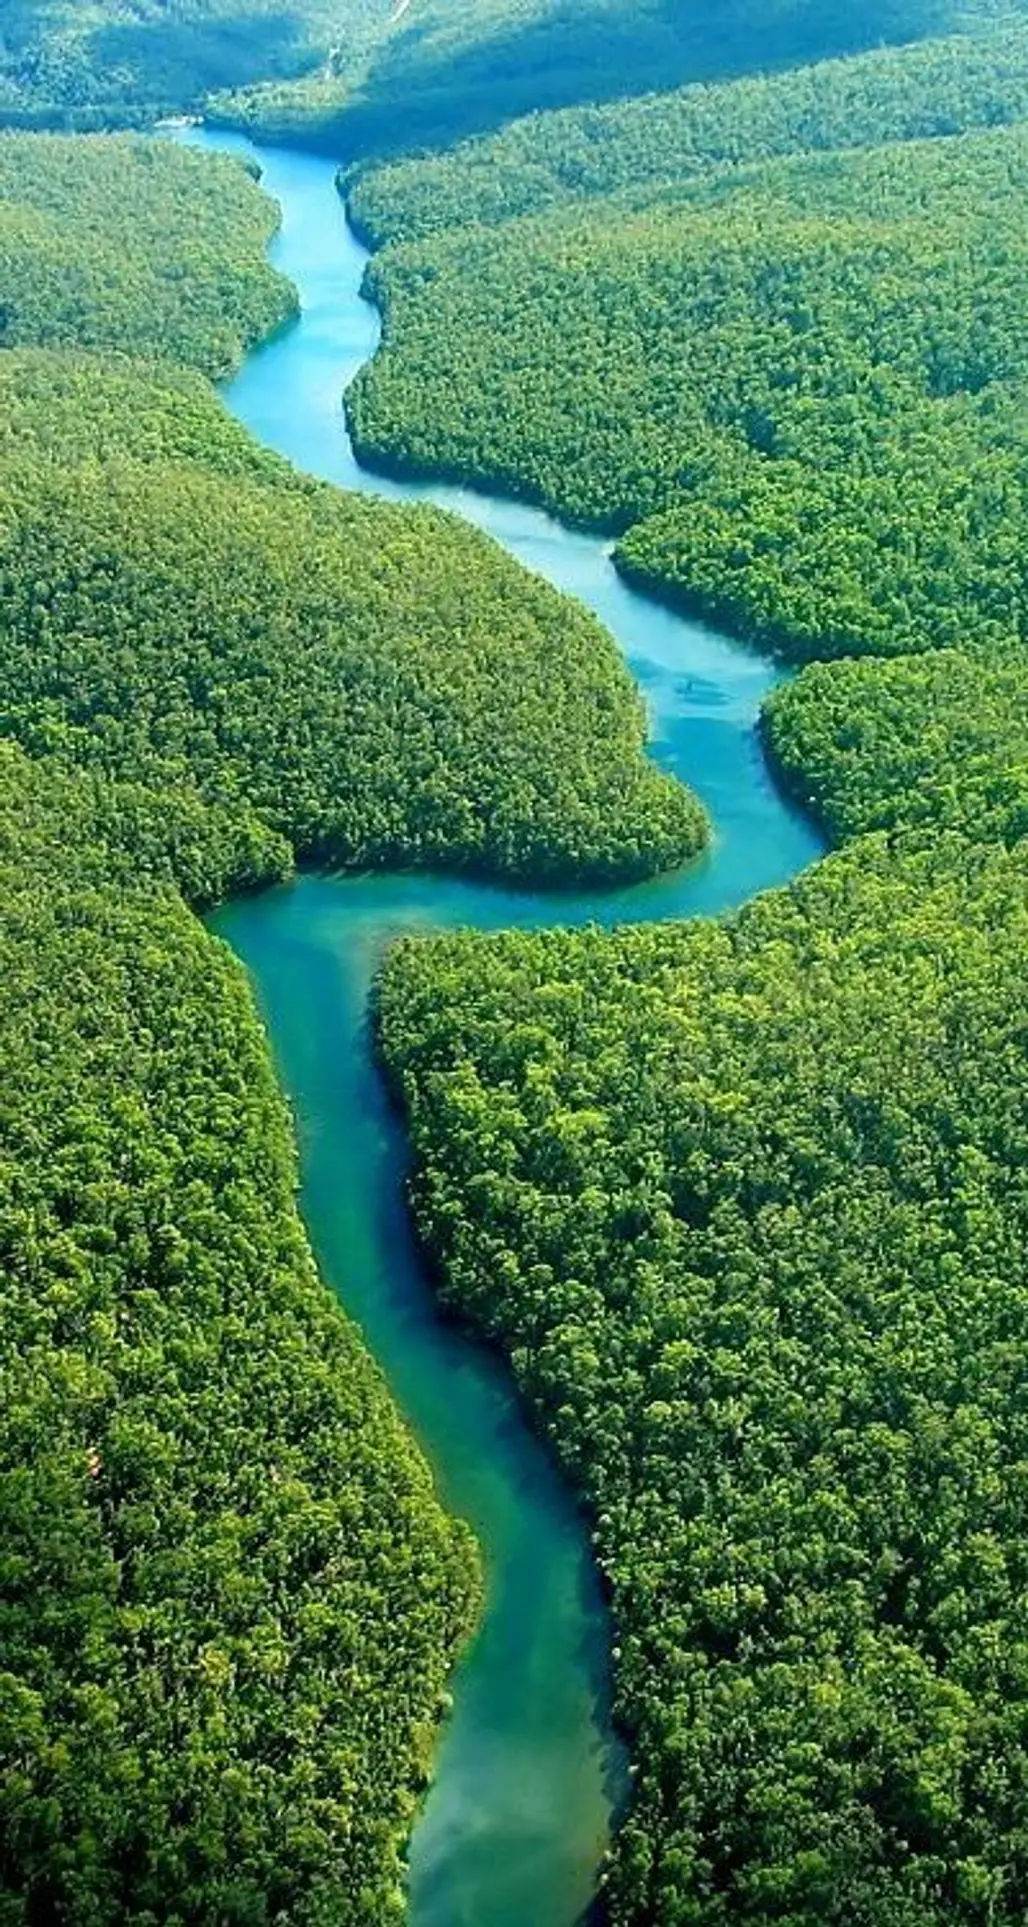 The Amazon, Ecuador